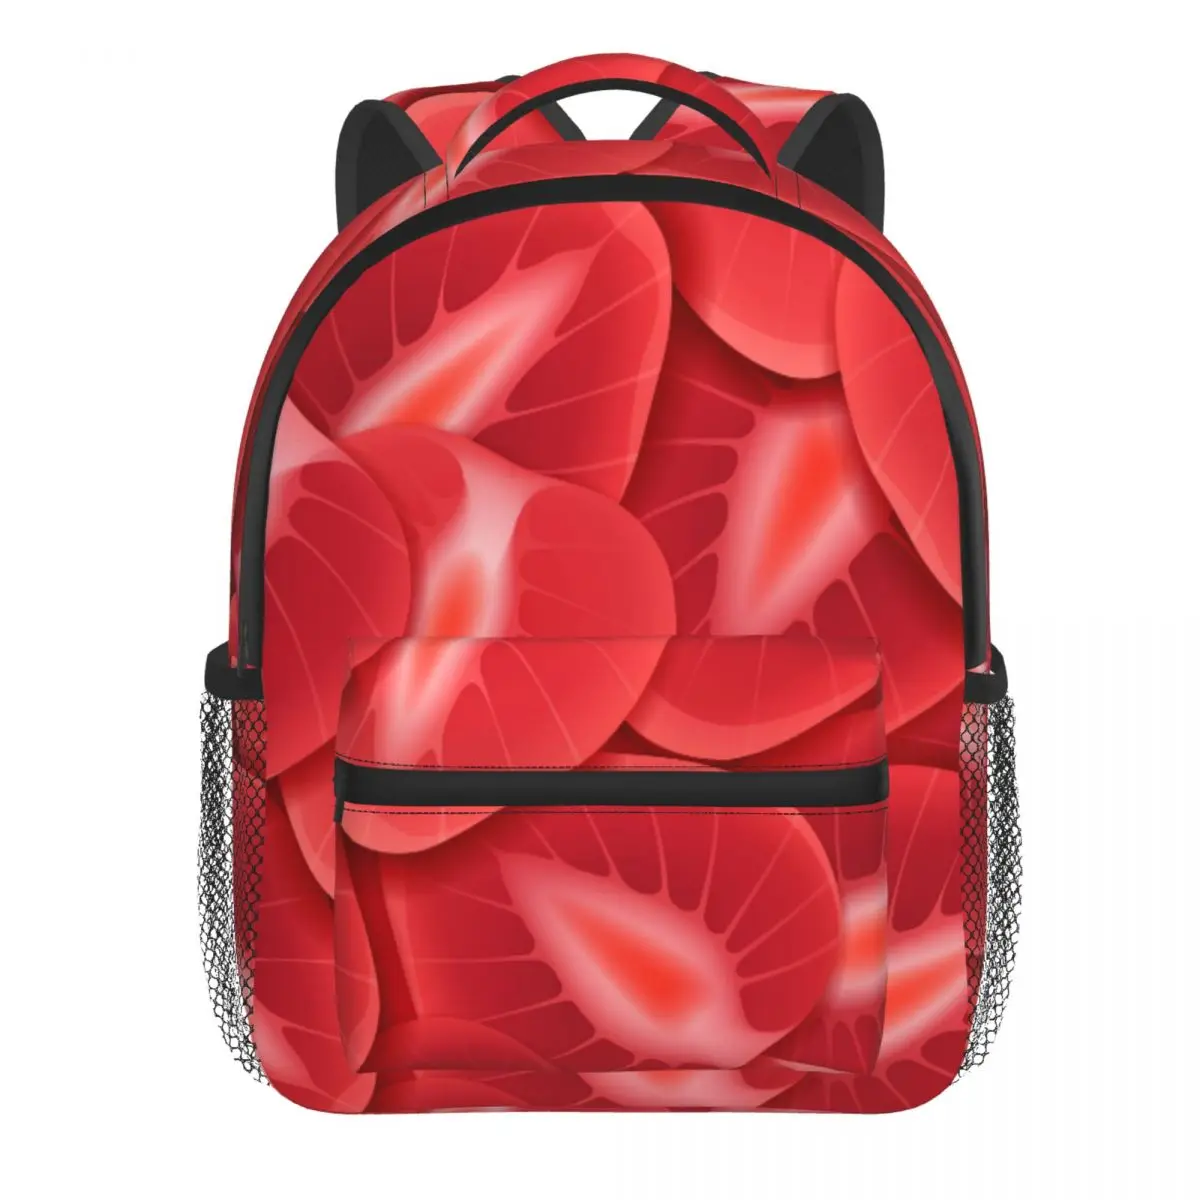 Kids Backpack Textures Strawberry Slices Kindergarten Children Mochila School Bag